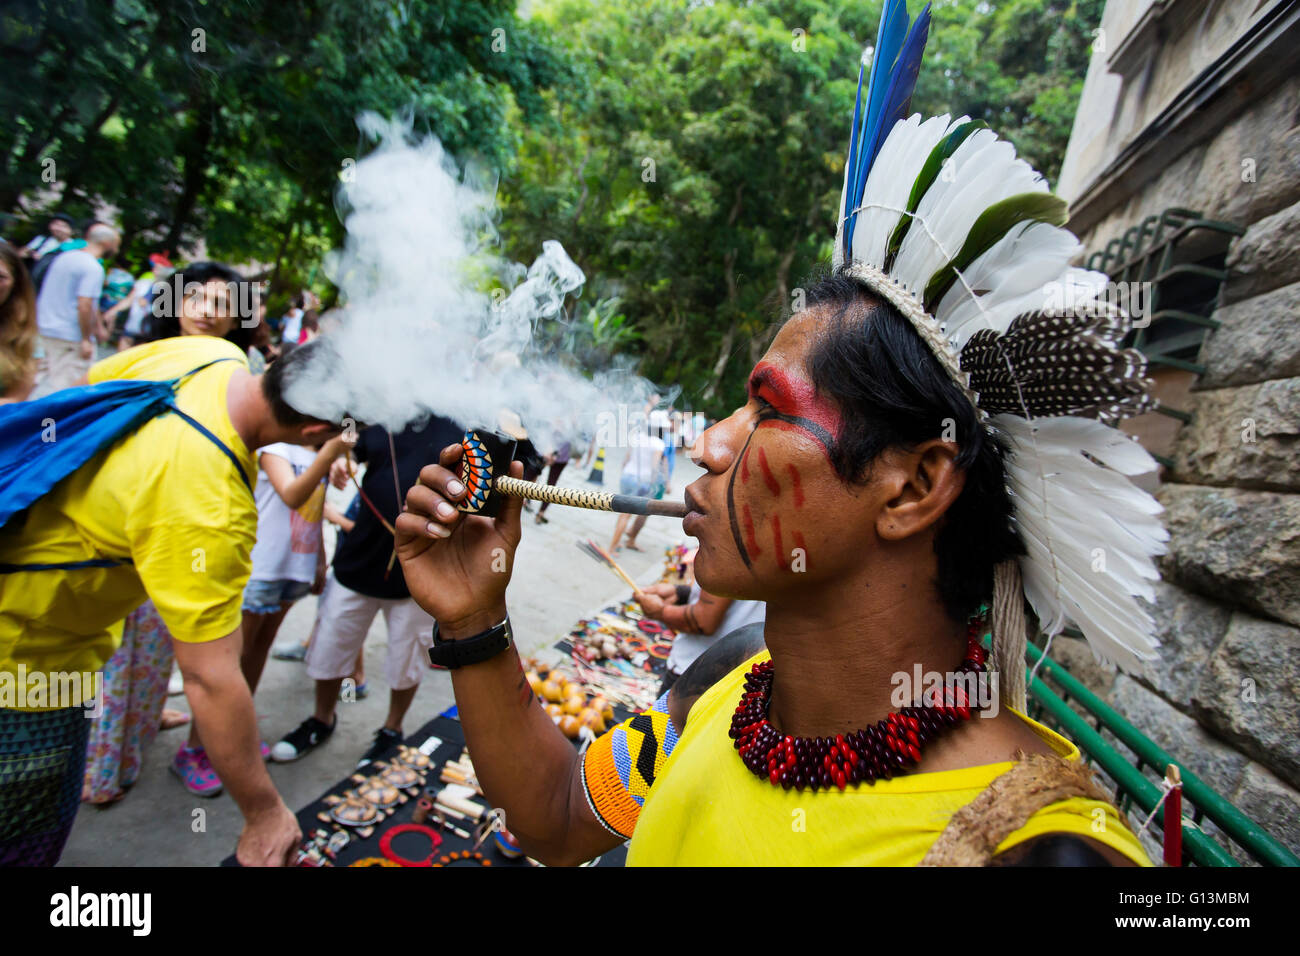 Brasiliano tradizionale indiano con faccia dipinta fumare la pipa al Parque Laje nel comemoration dell'indiano del giorno, Rio de Janeiro, Brasile Foto Stock